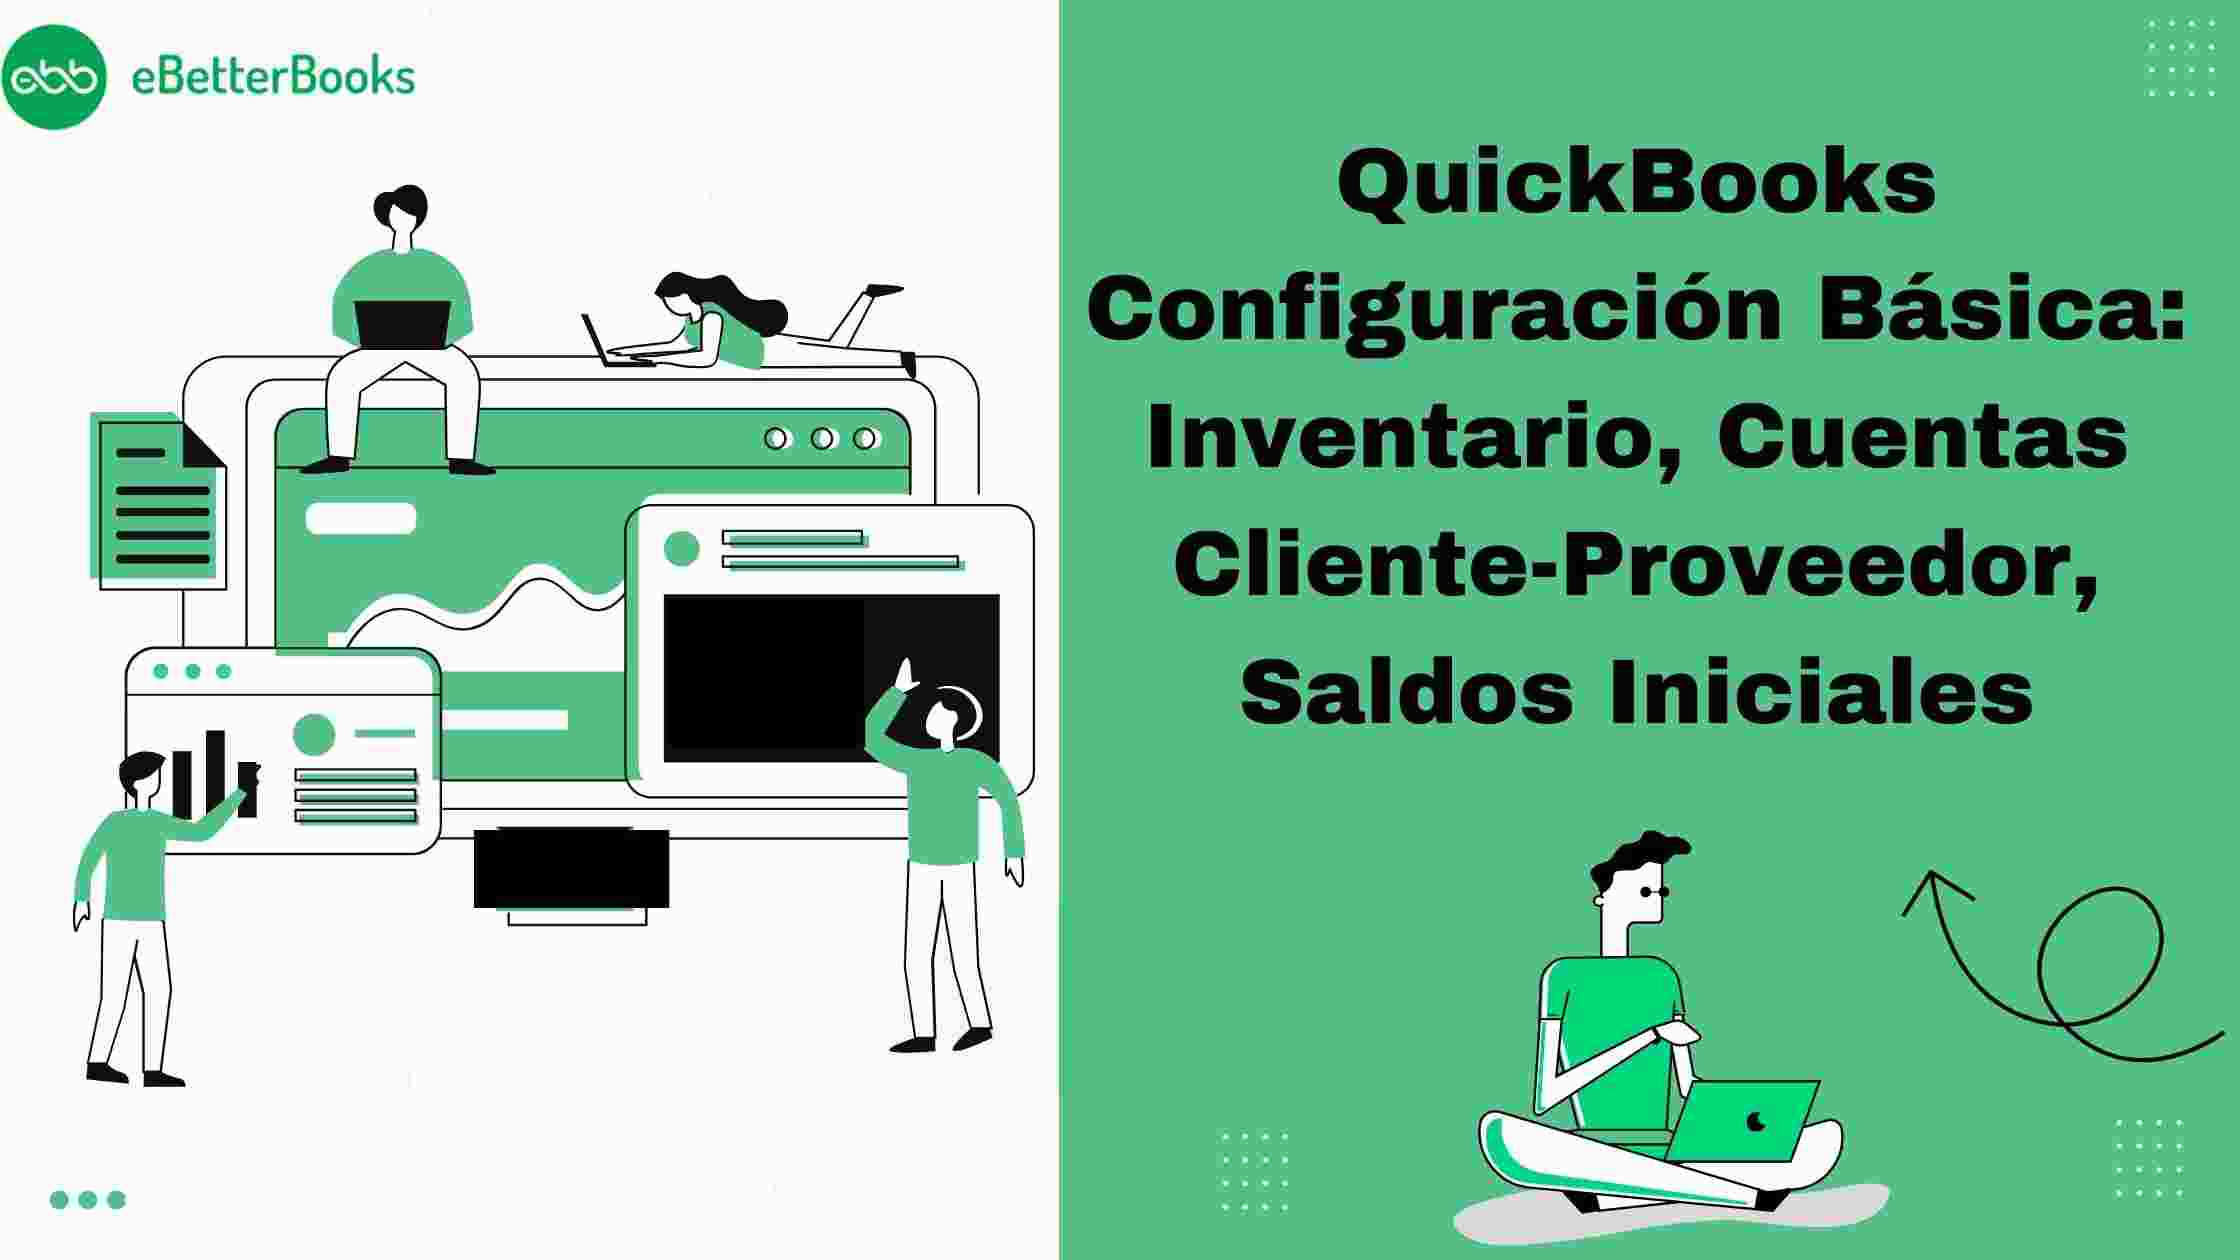 QuickBooks Configuración Básica: Inventario, Cuentas Cliente-Proveedor, Saldos Iniciales